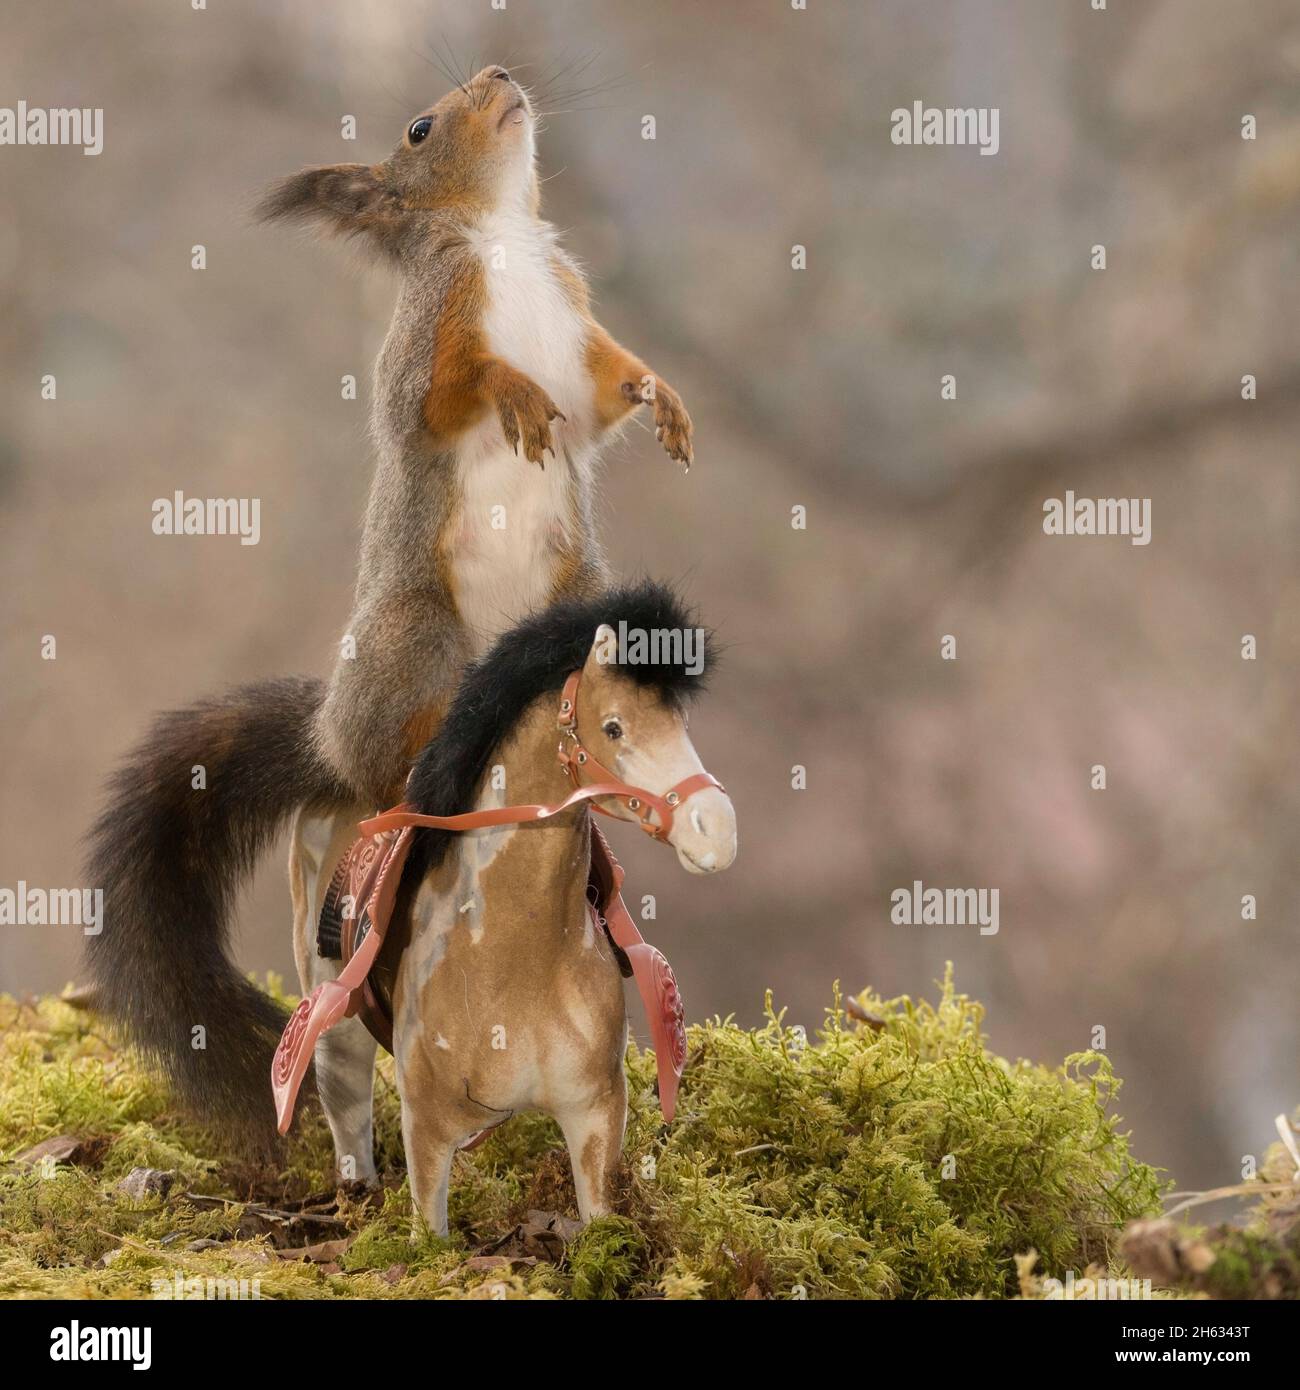 Profil und Nahaufnahme des roten Eichhörnchens, das auf einem aufrecht stehenden Pferd steht Stockfoto